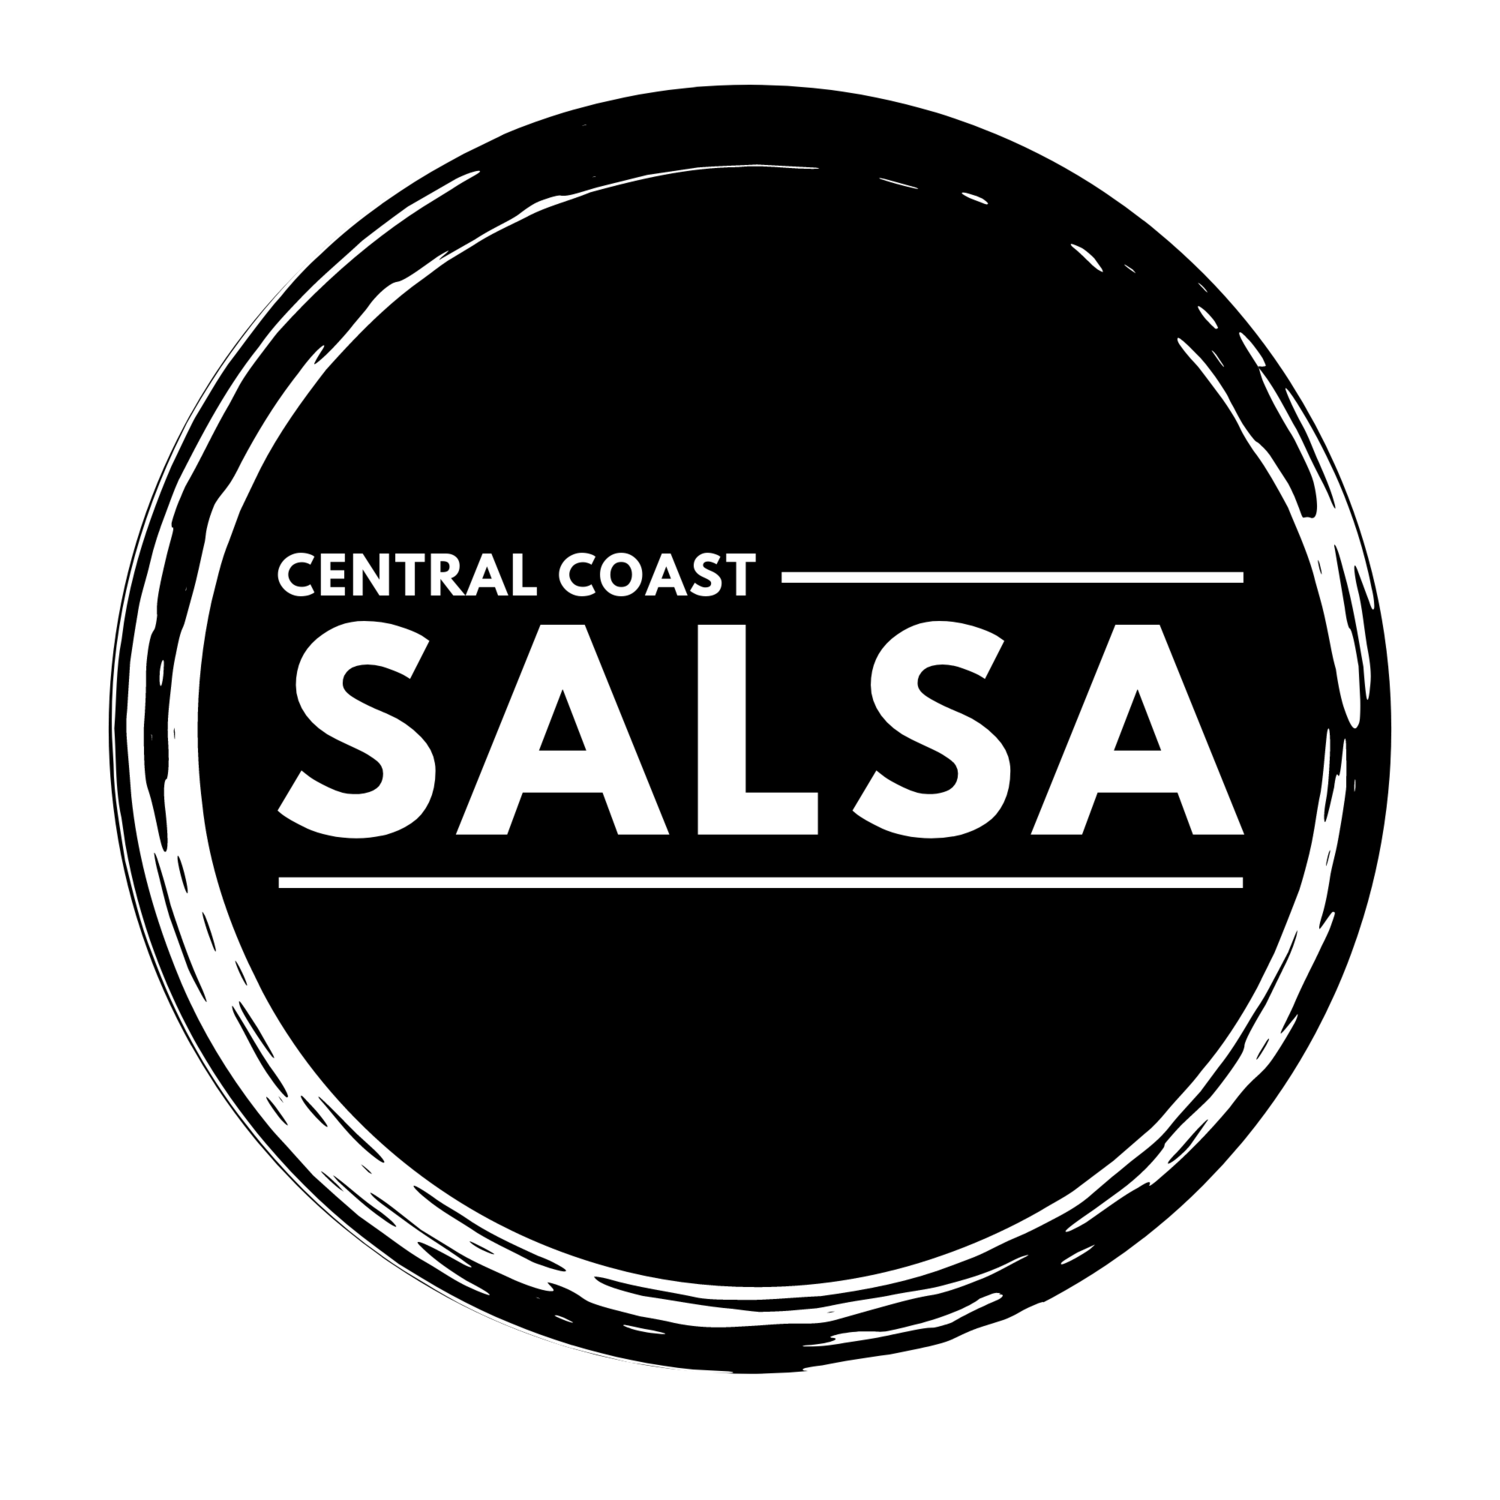 Central Coast Salsa